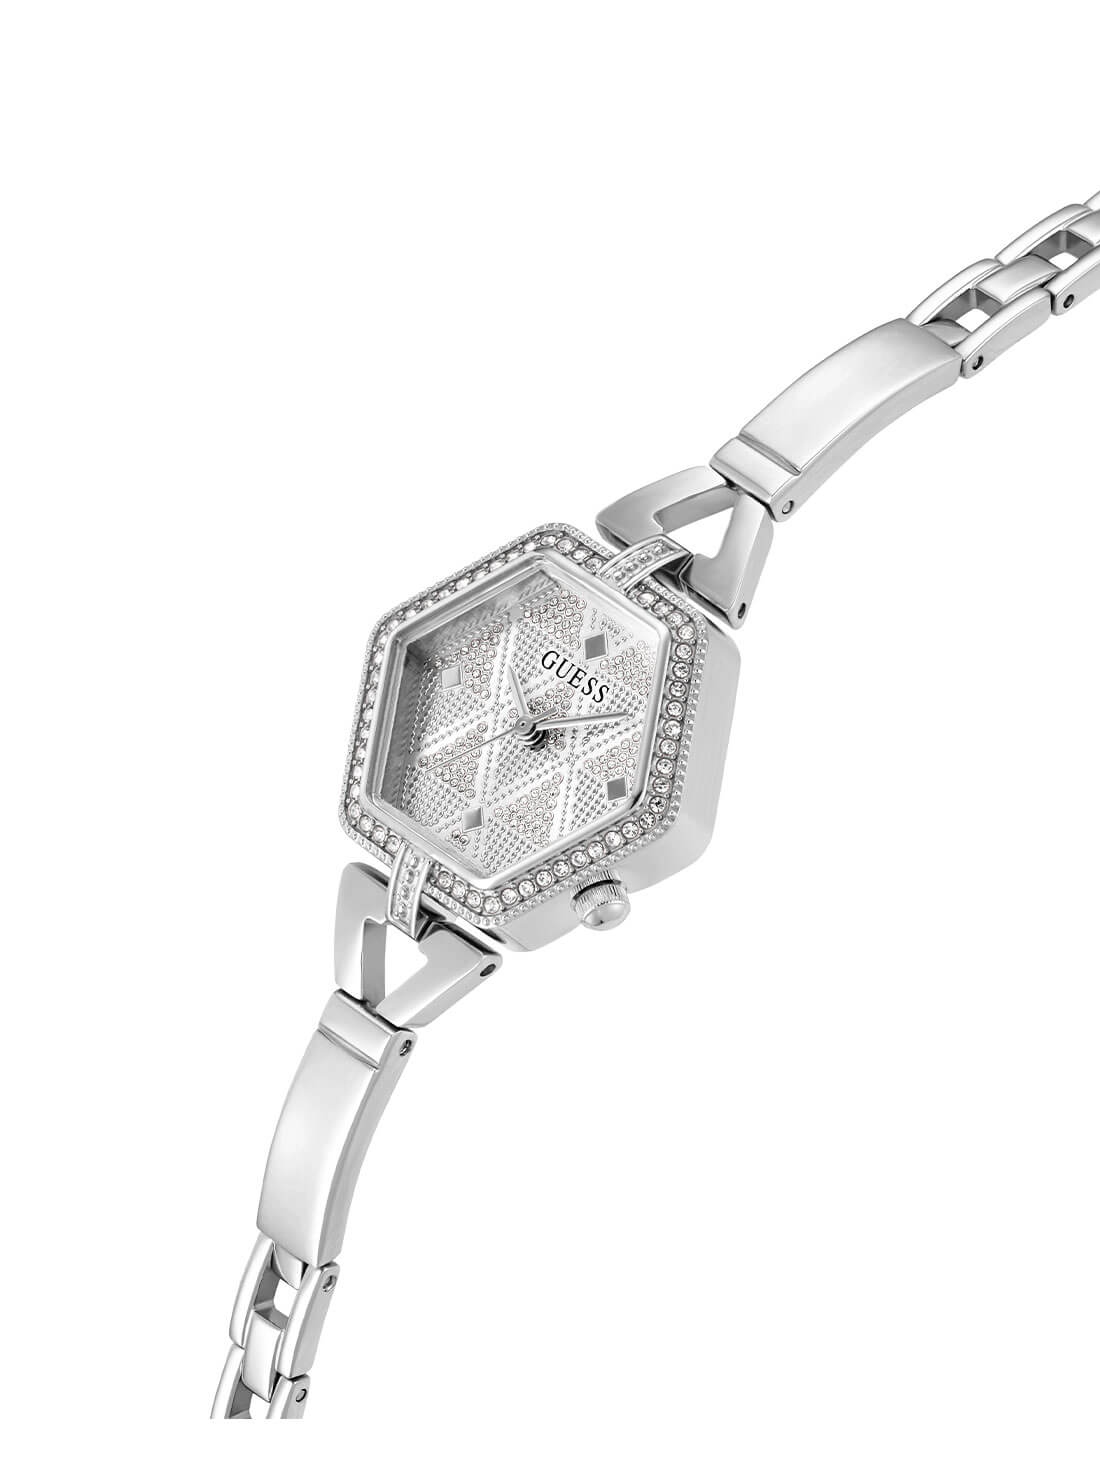 Silver Audrey Glitz Hexagonal Link Watch | GUESS Women's Watches | detail view